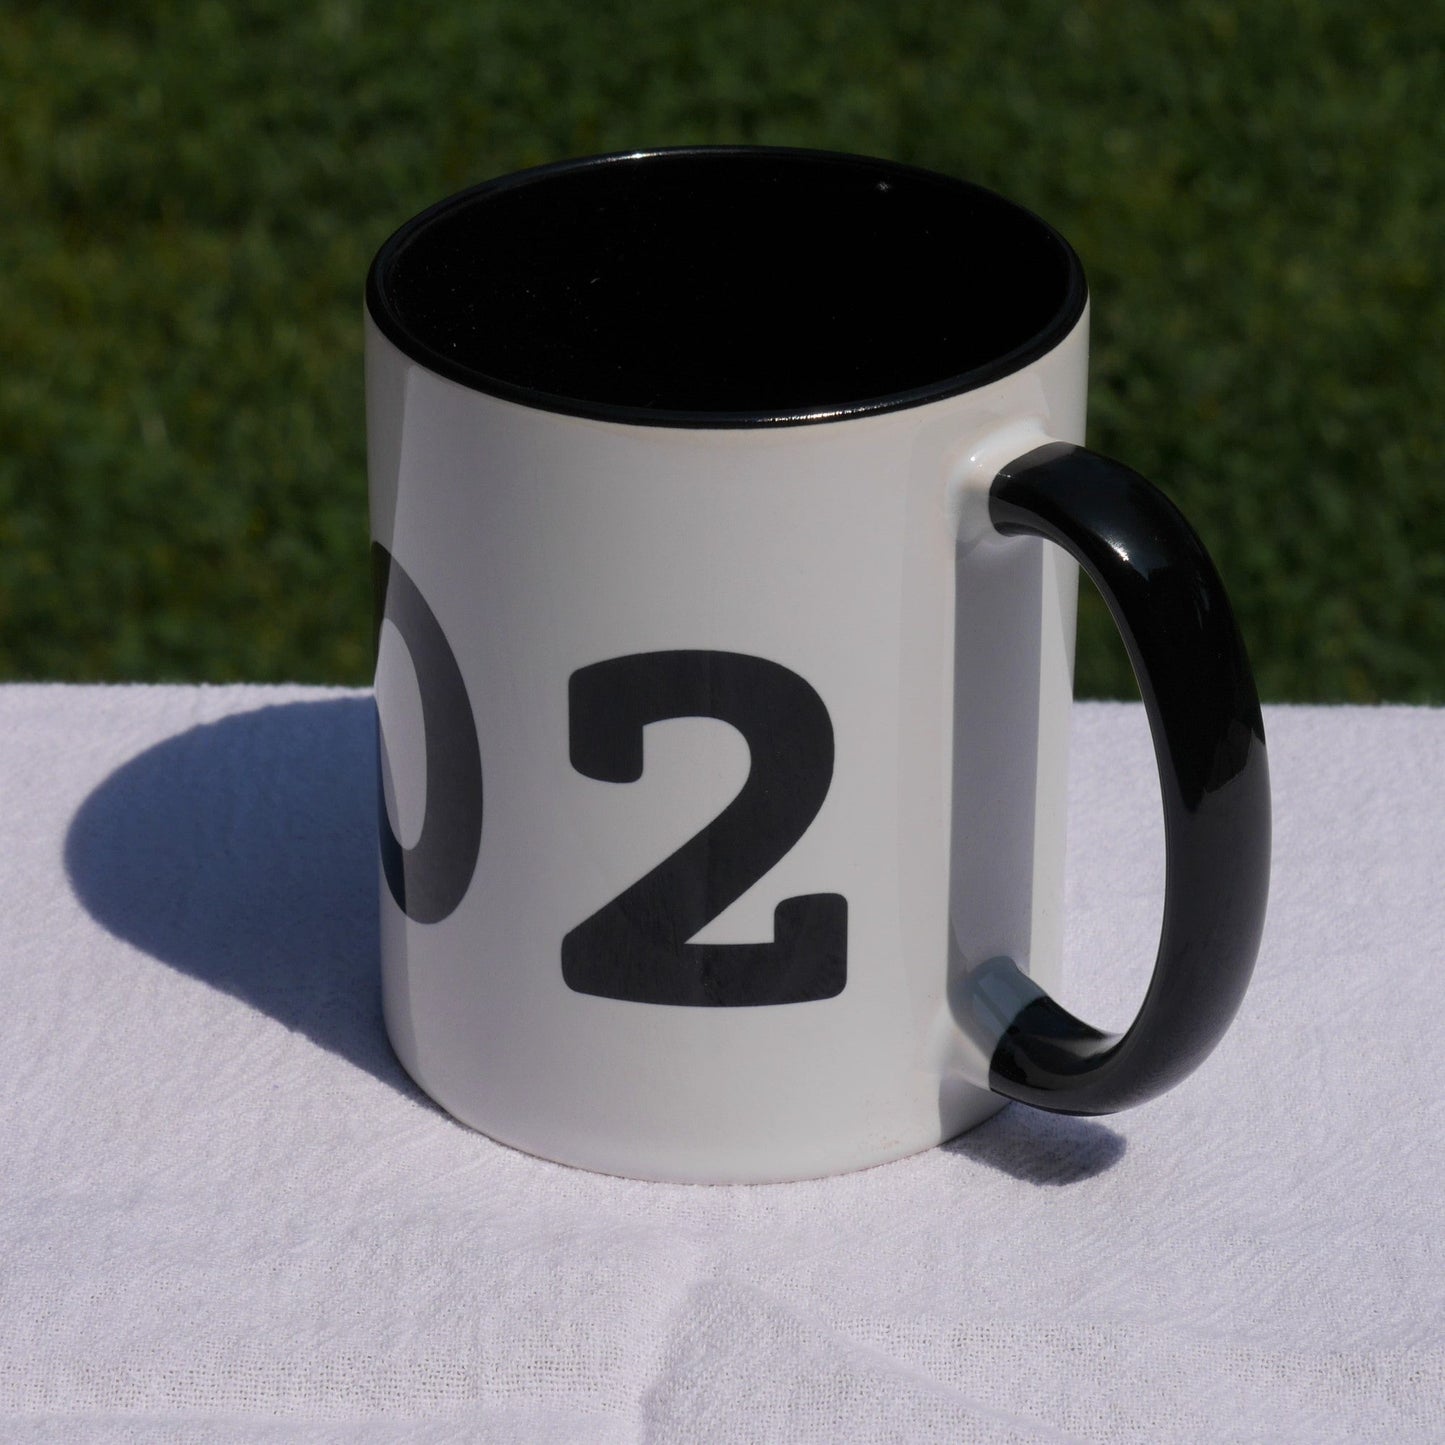 Aviation-Theme Coffee Mug - Black • YTS Timmins • YHM Designs - Image 06